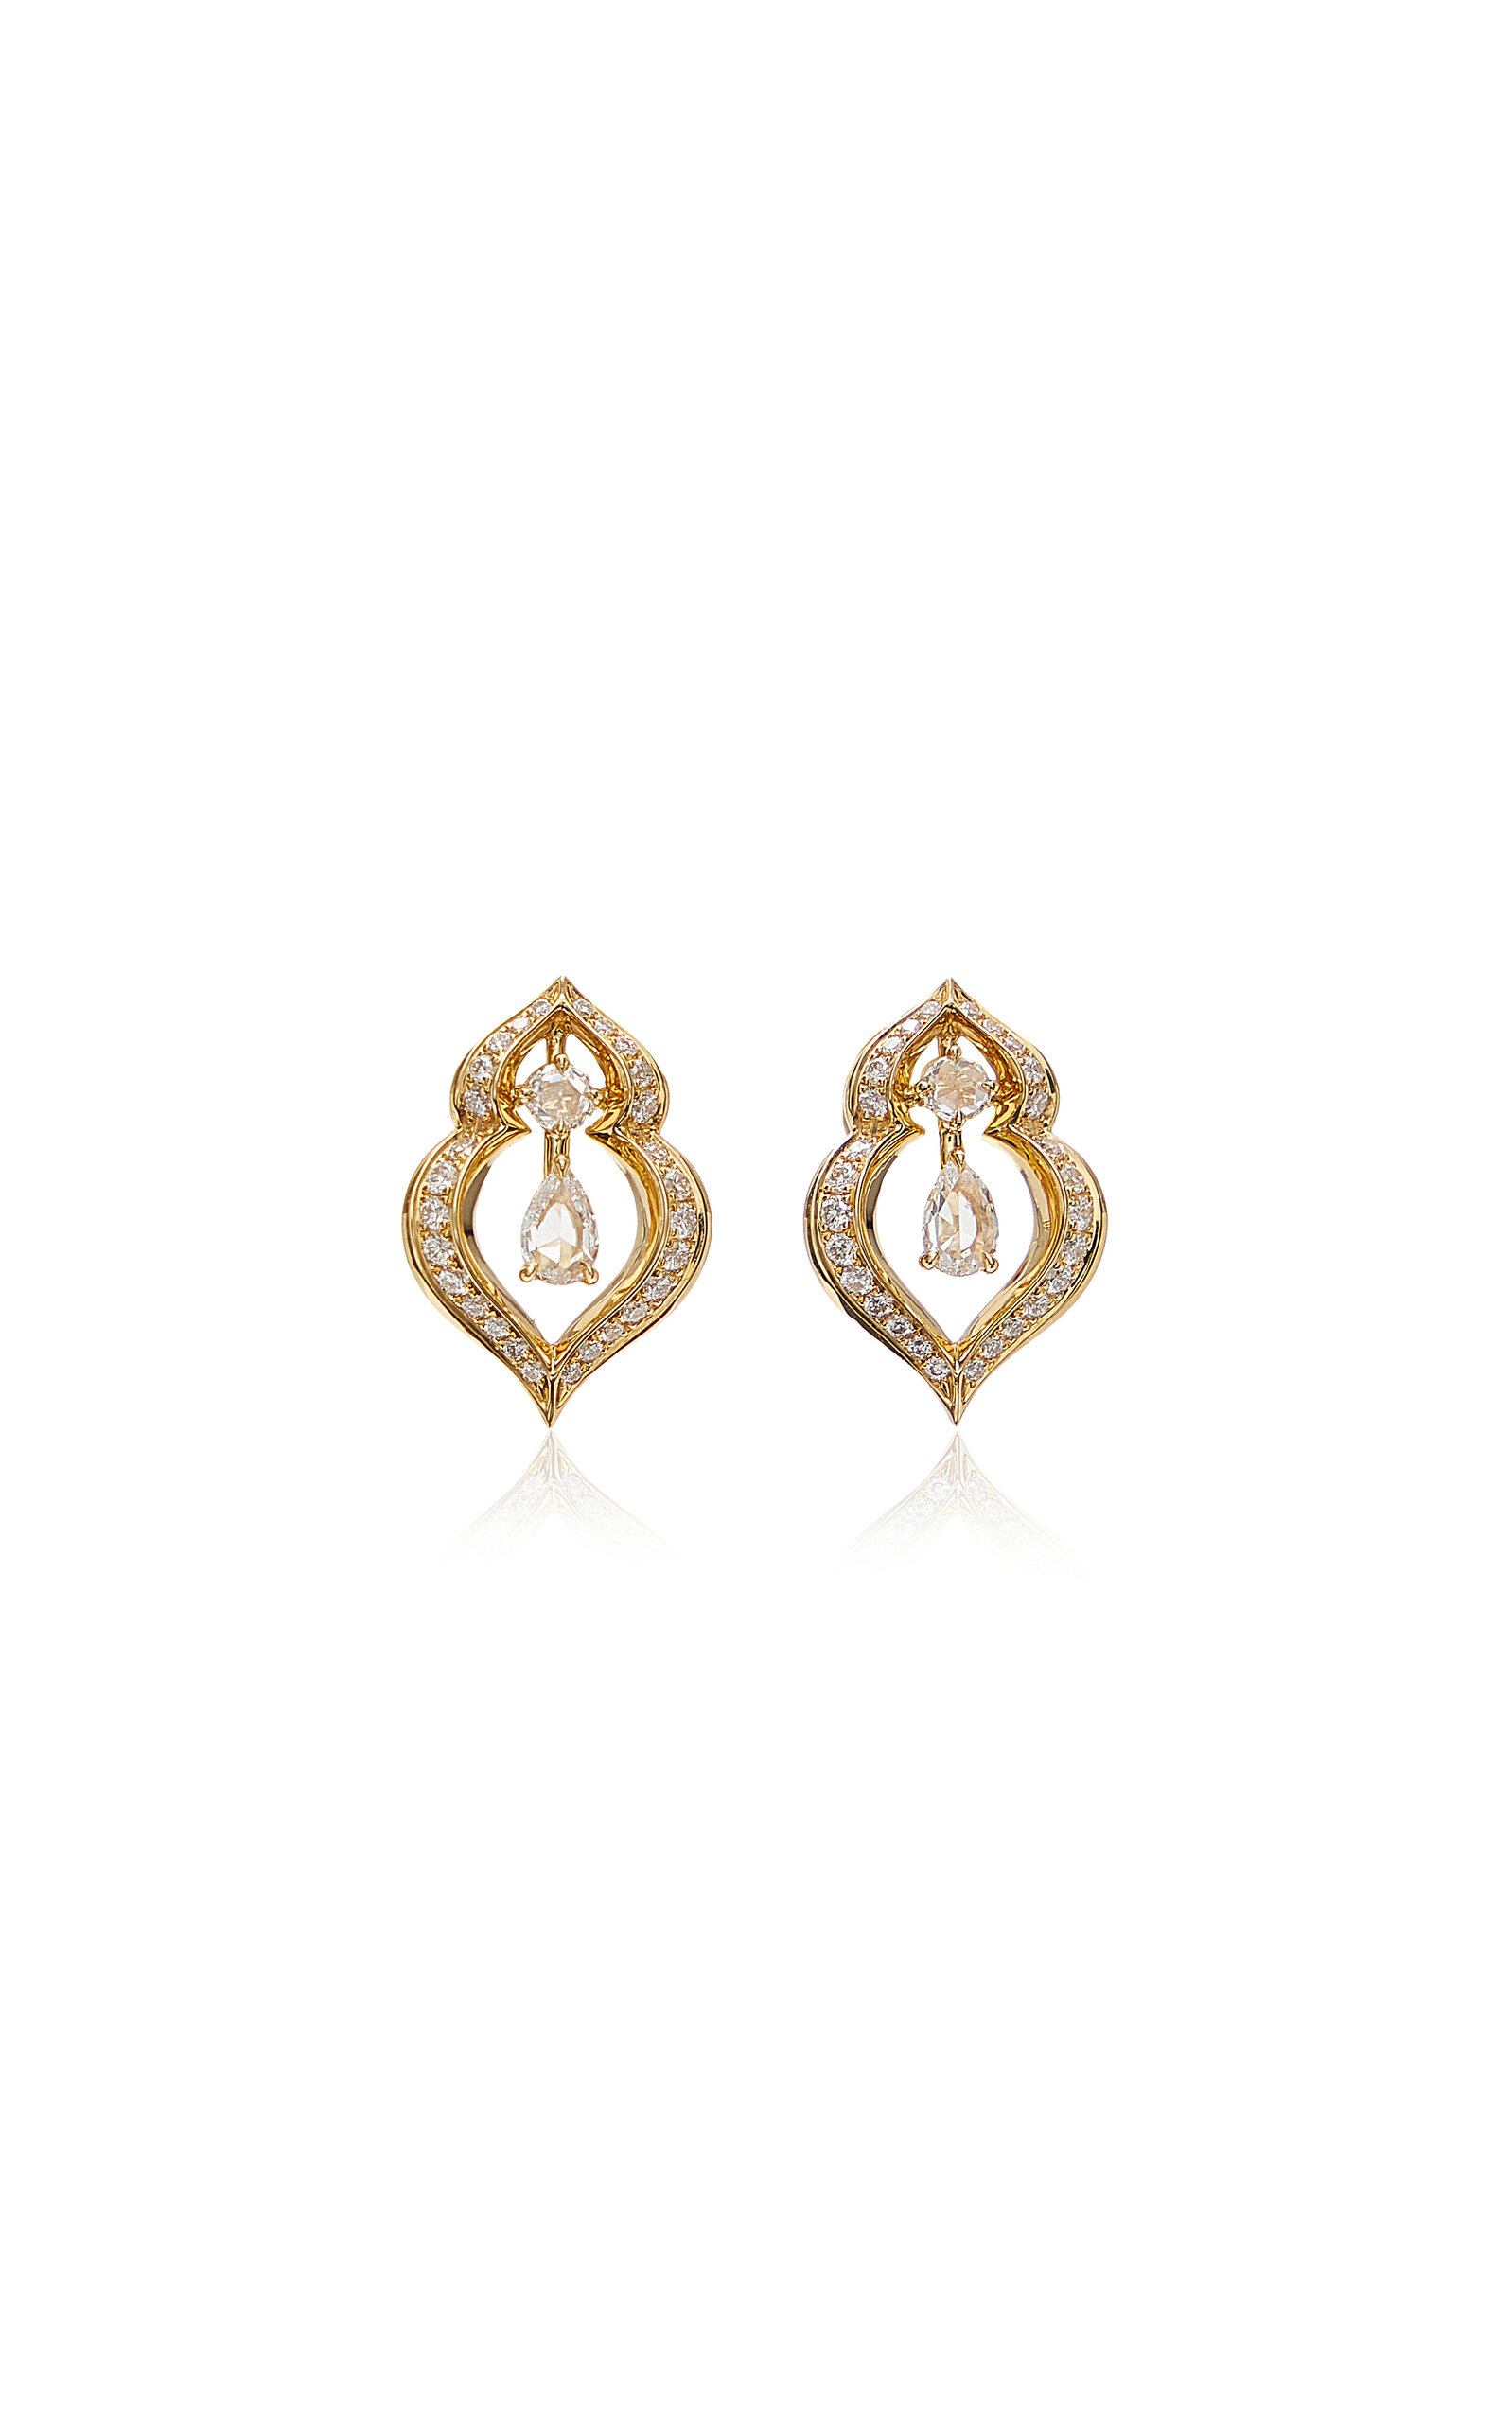 Haveli 18K Yellow Gold Diamond Earrings